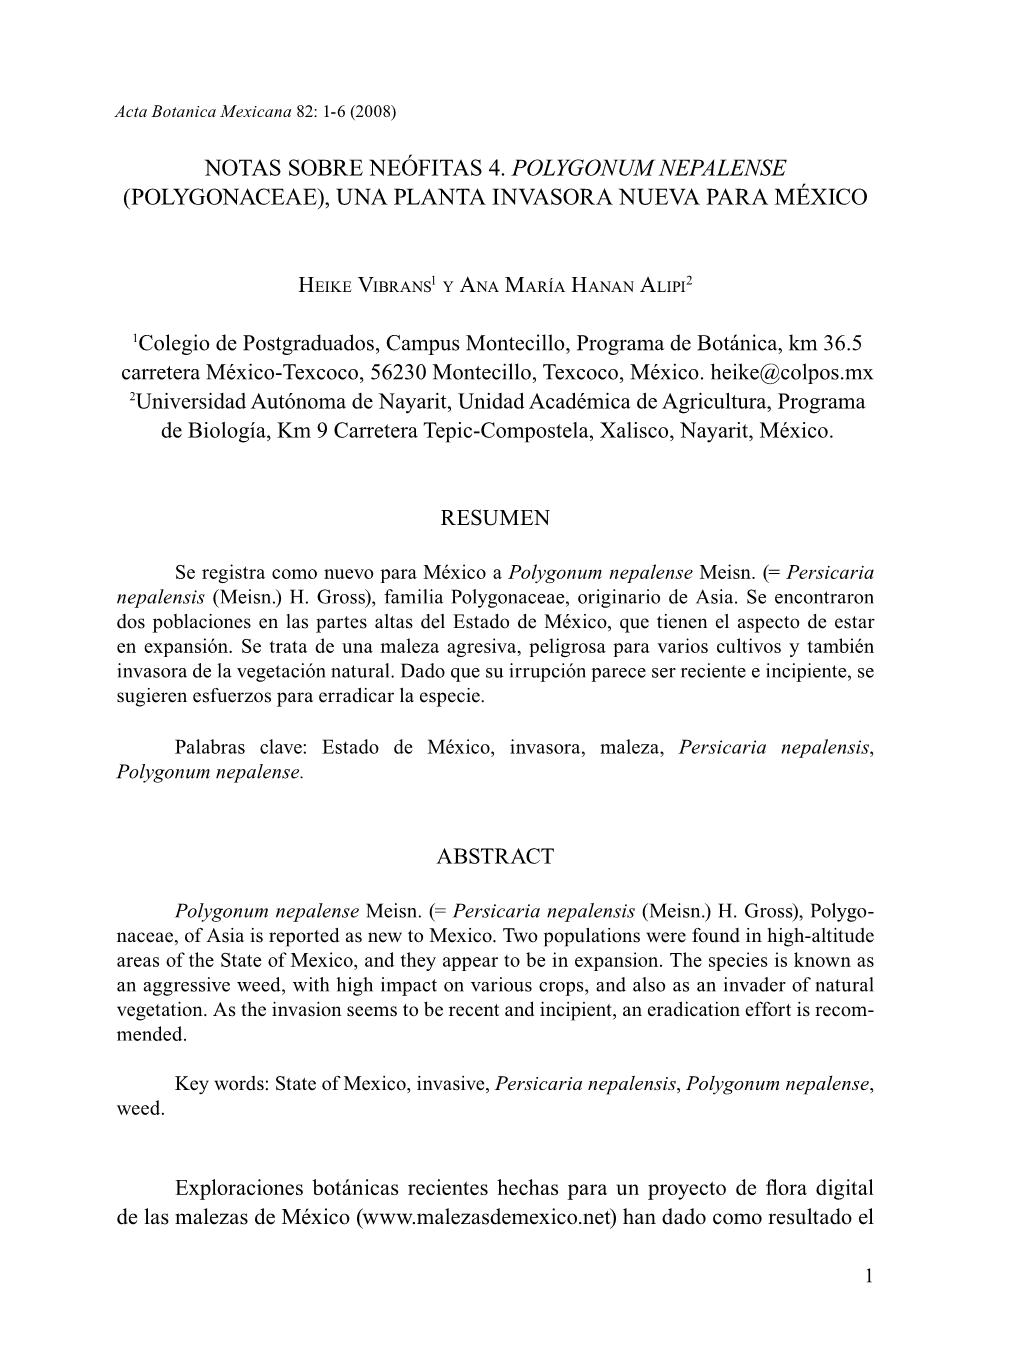 Notas Sobre Neófitas 4. Polygonum Nepalense (Polygonaceae), Una Planta Invasora Nueva Para México